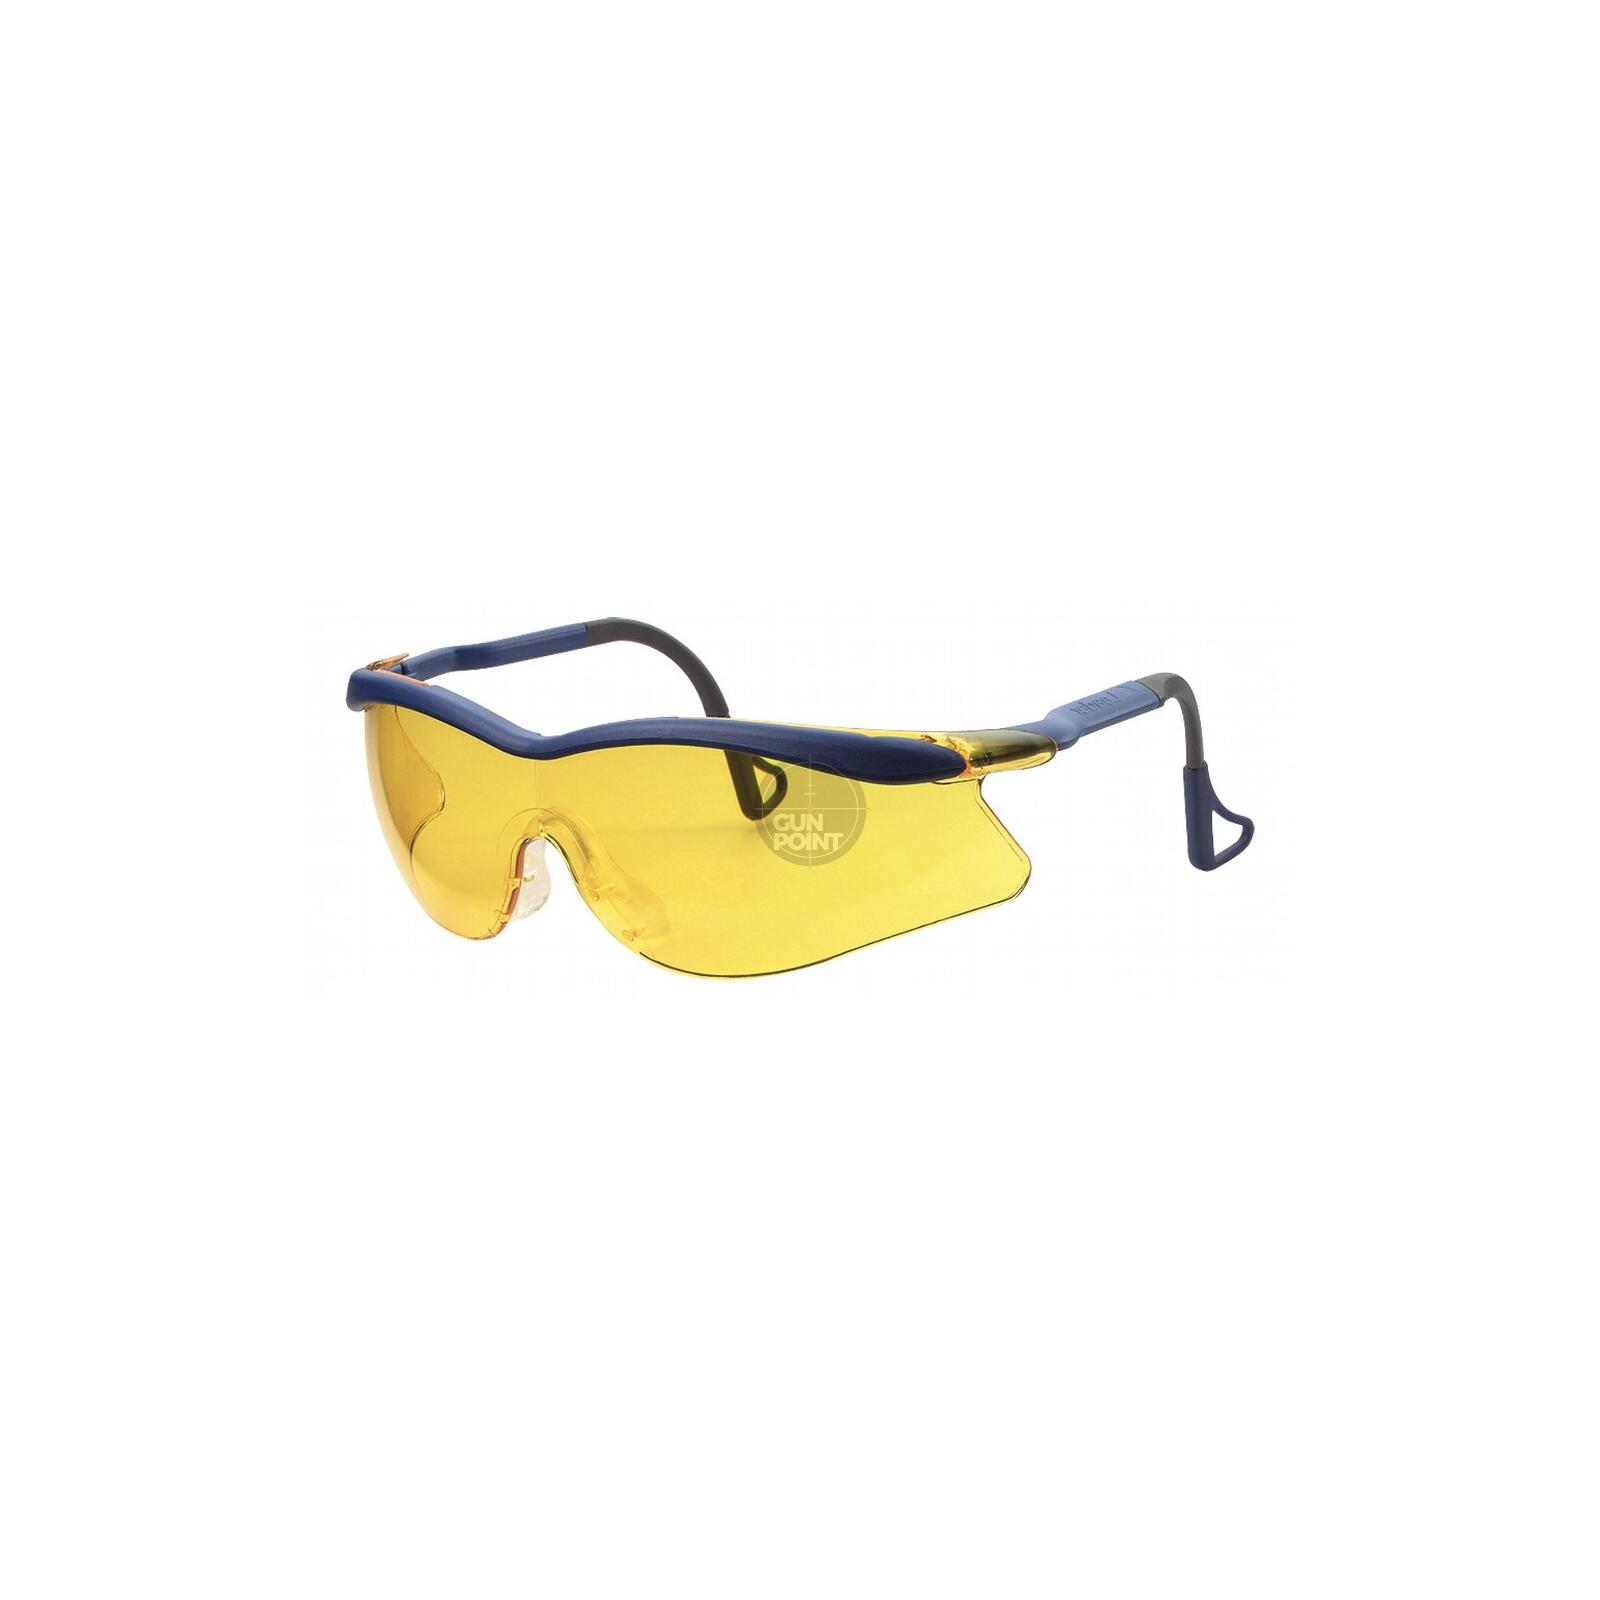 3M Peltor Schiessbrille QX 2000 gelb